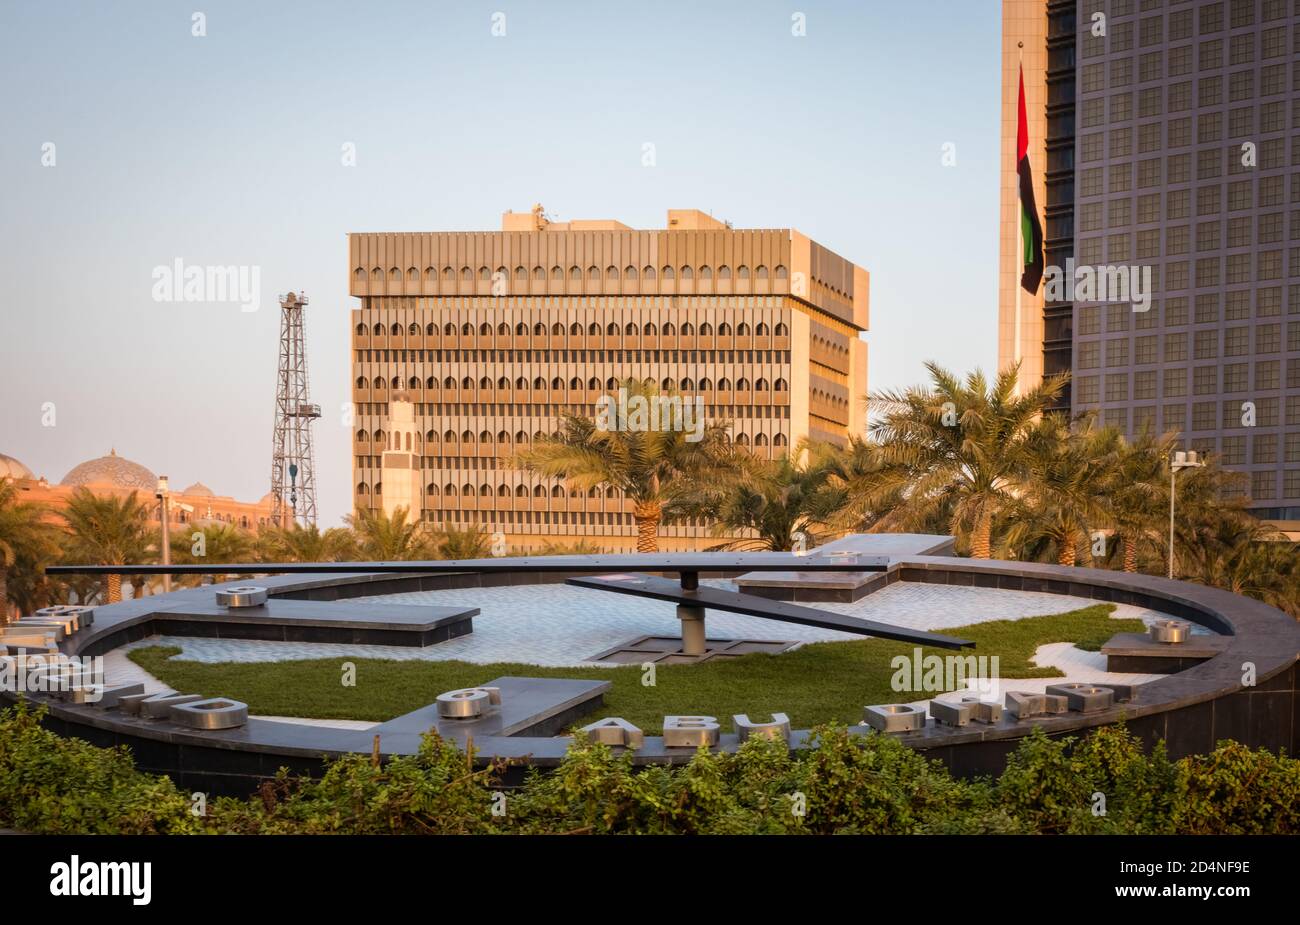 Abu Dhabi , UAE - 10 october 2020 : Capital City of United Arab Emirates with emirates flag, etihad towers, ADNOC head office,emirates palace and city Stock Photo